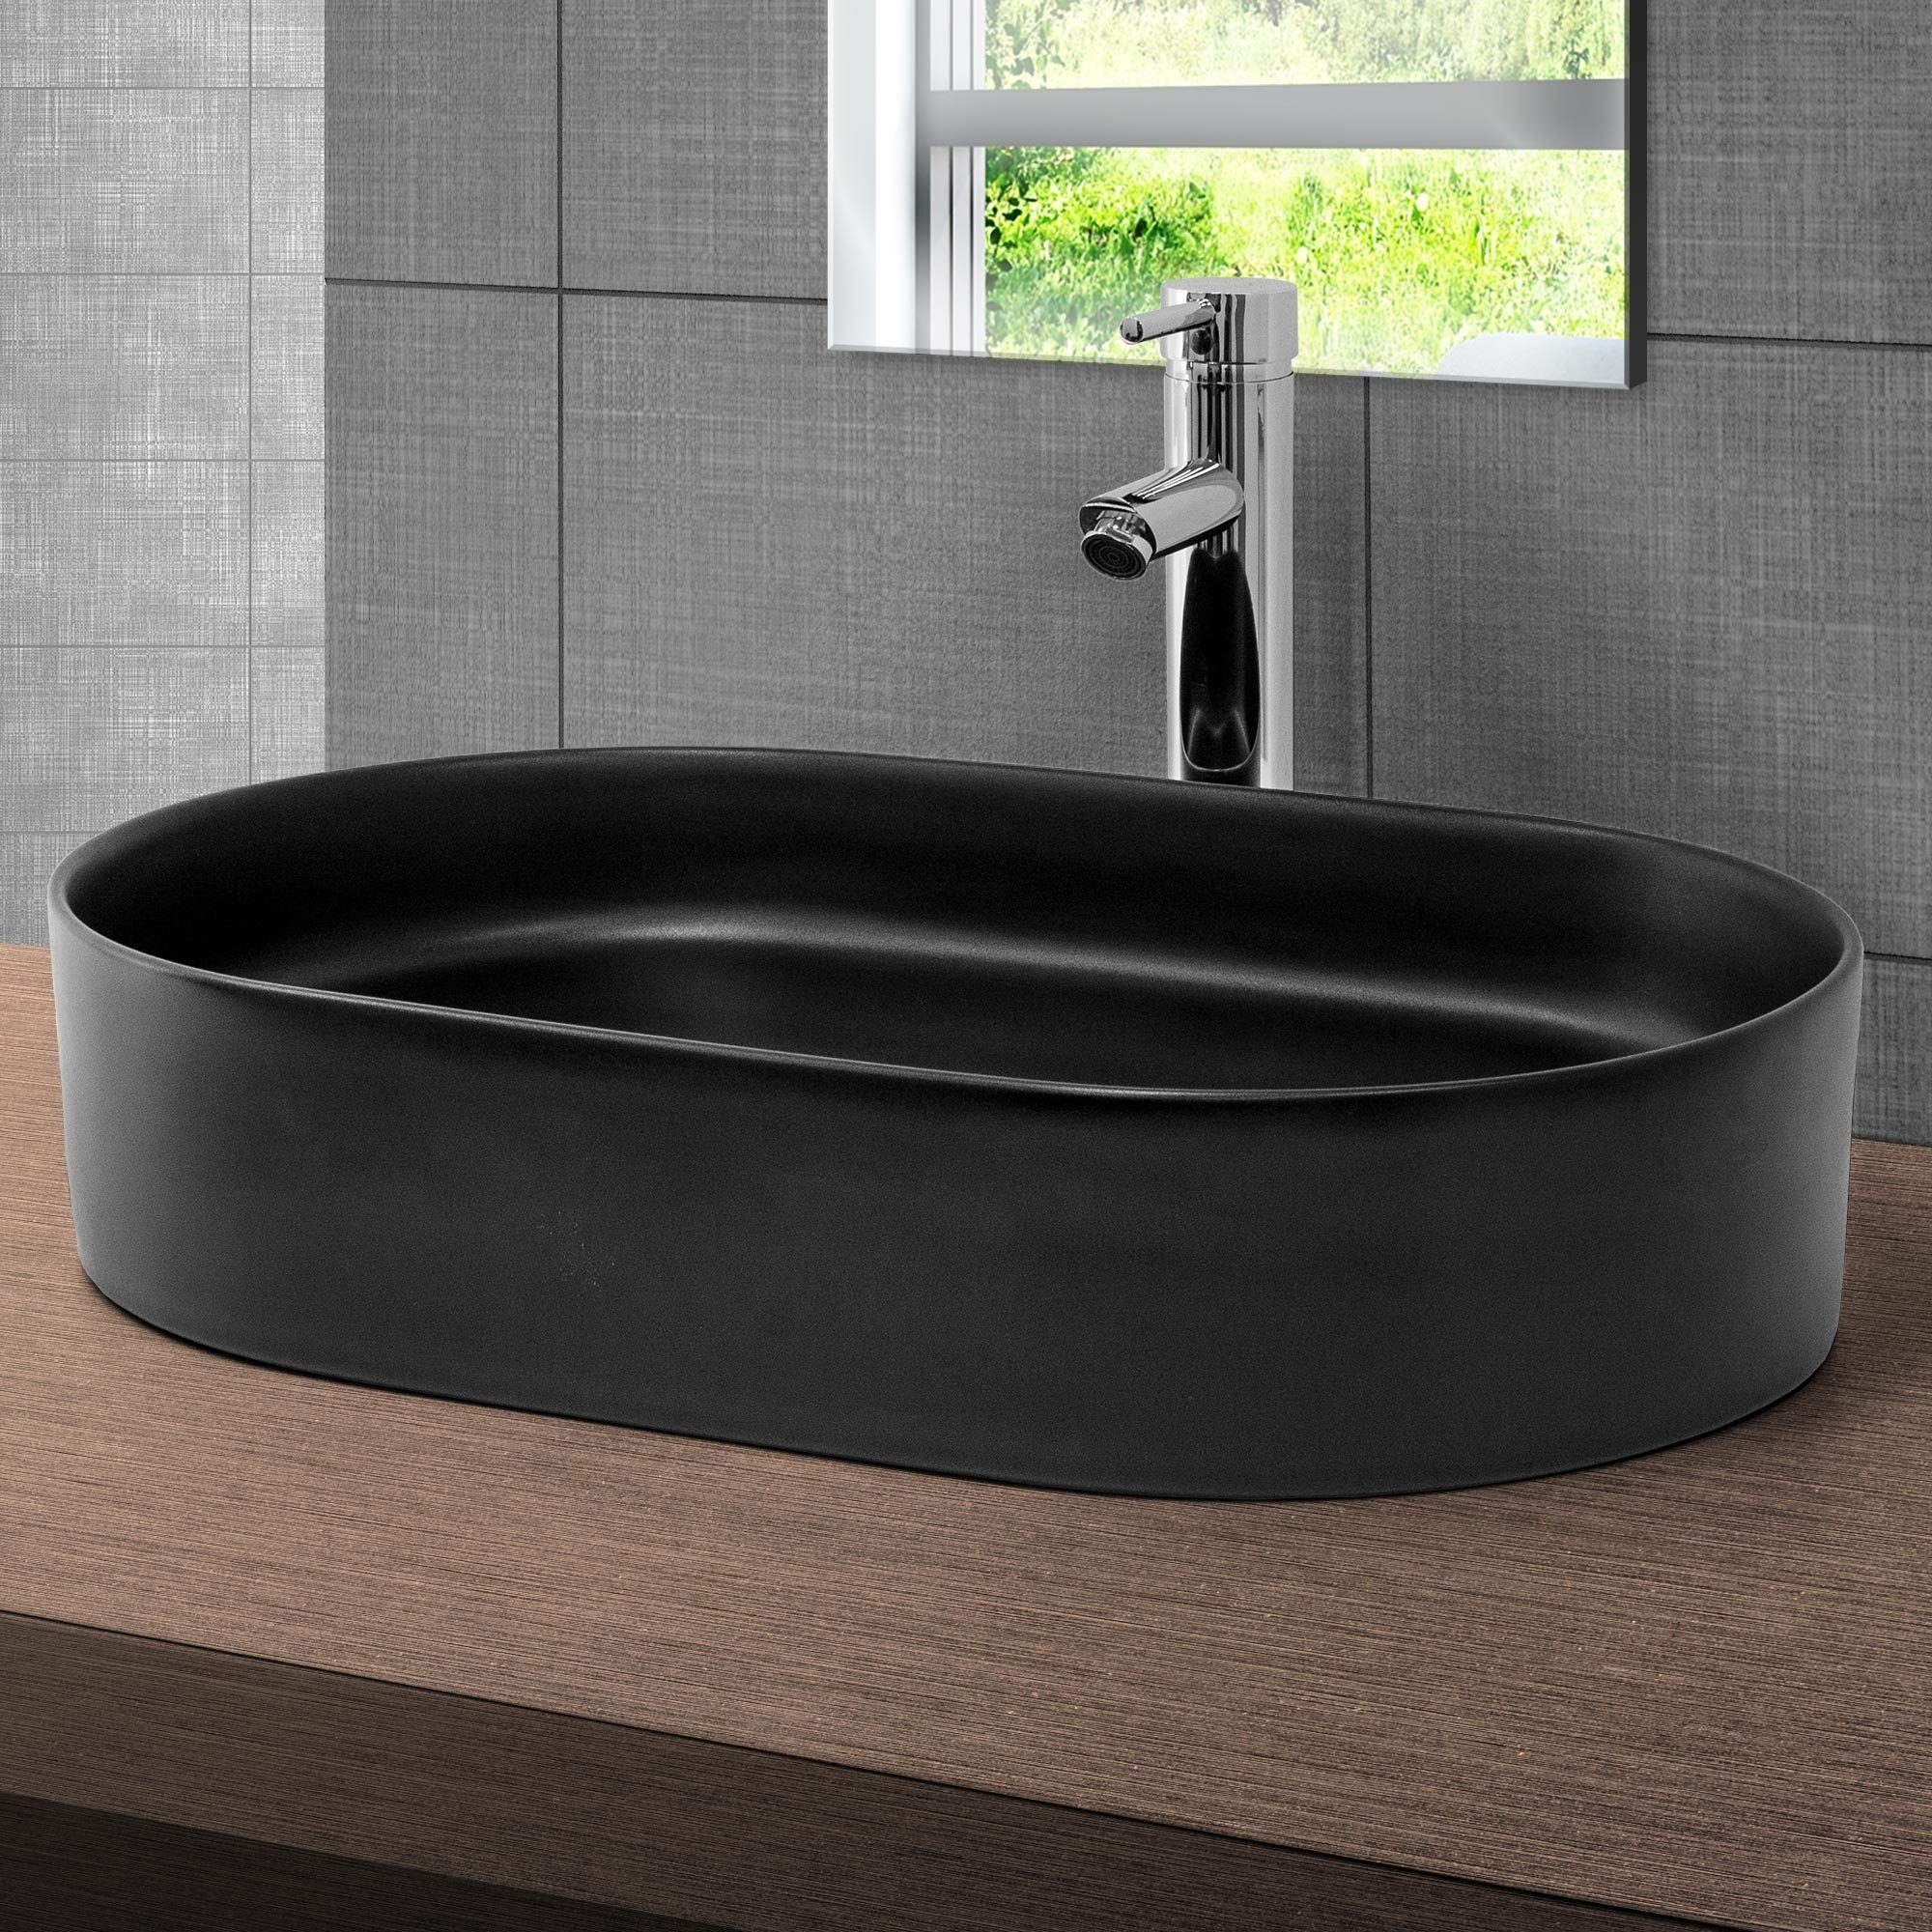 LuxeBath Waschbecken Aufsatzwaschbecken aus Keramik für Badezimmer/Gäste-WC, Handwaschbecken Oval 61x39,5x12,5 cm Schwarz